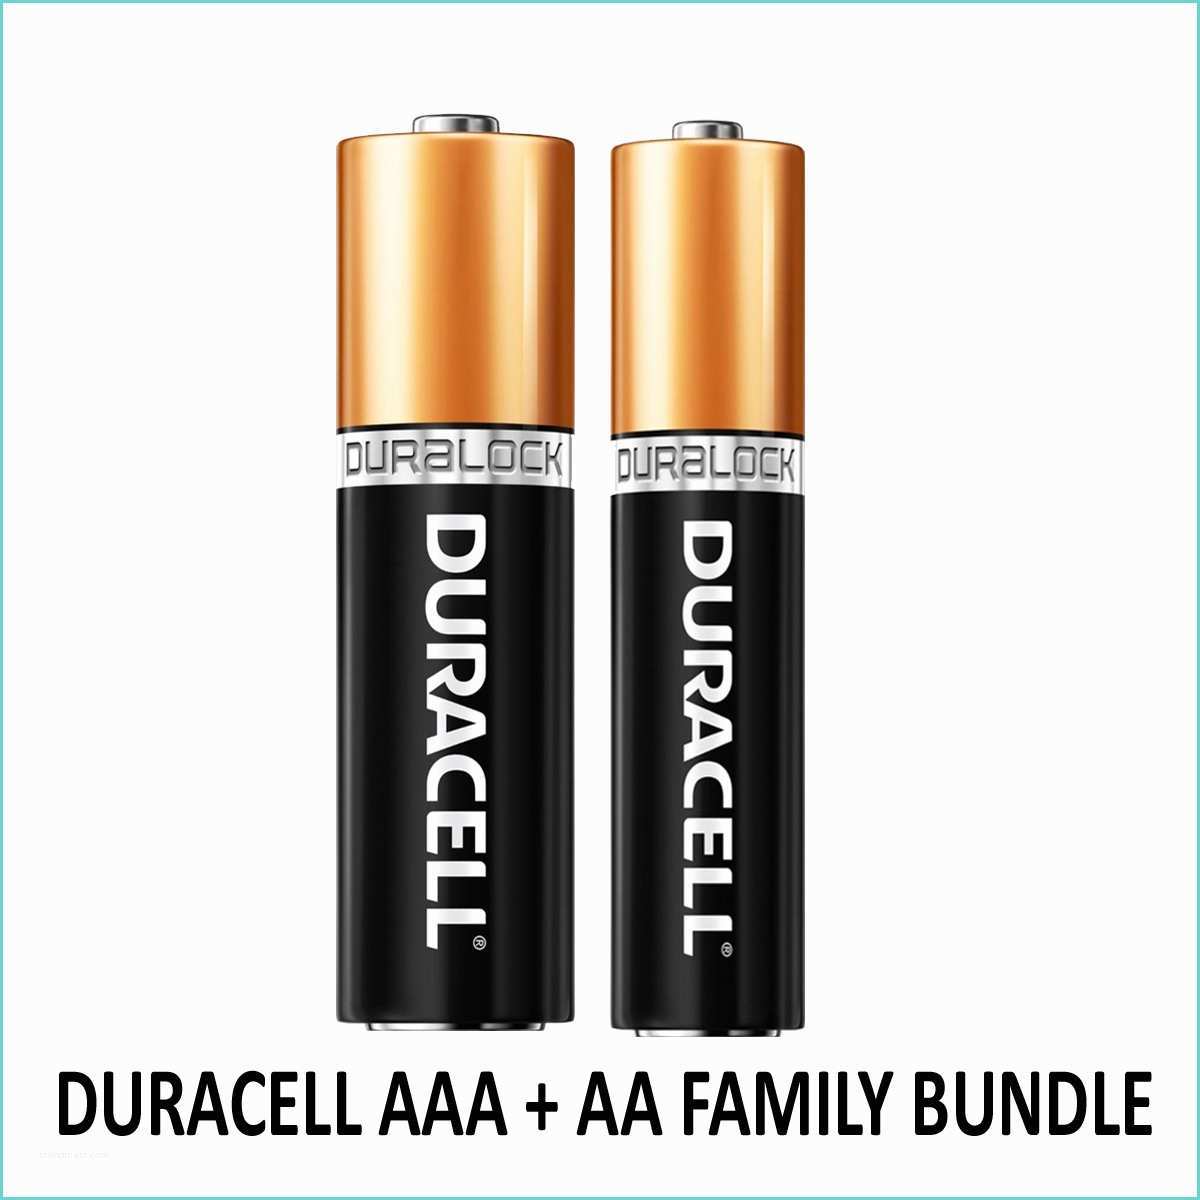 Duracell Alkaline Batteries 50 Duracell 30 Aaa 20 Aa Duralock Alkaline Batteries